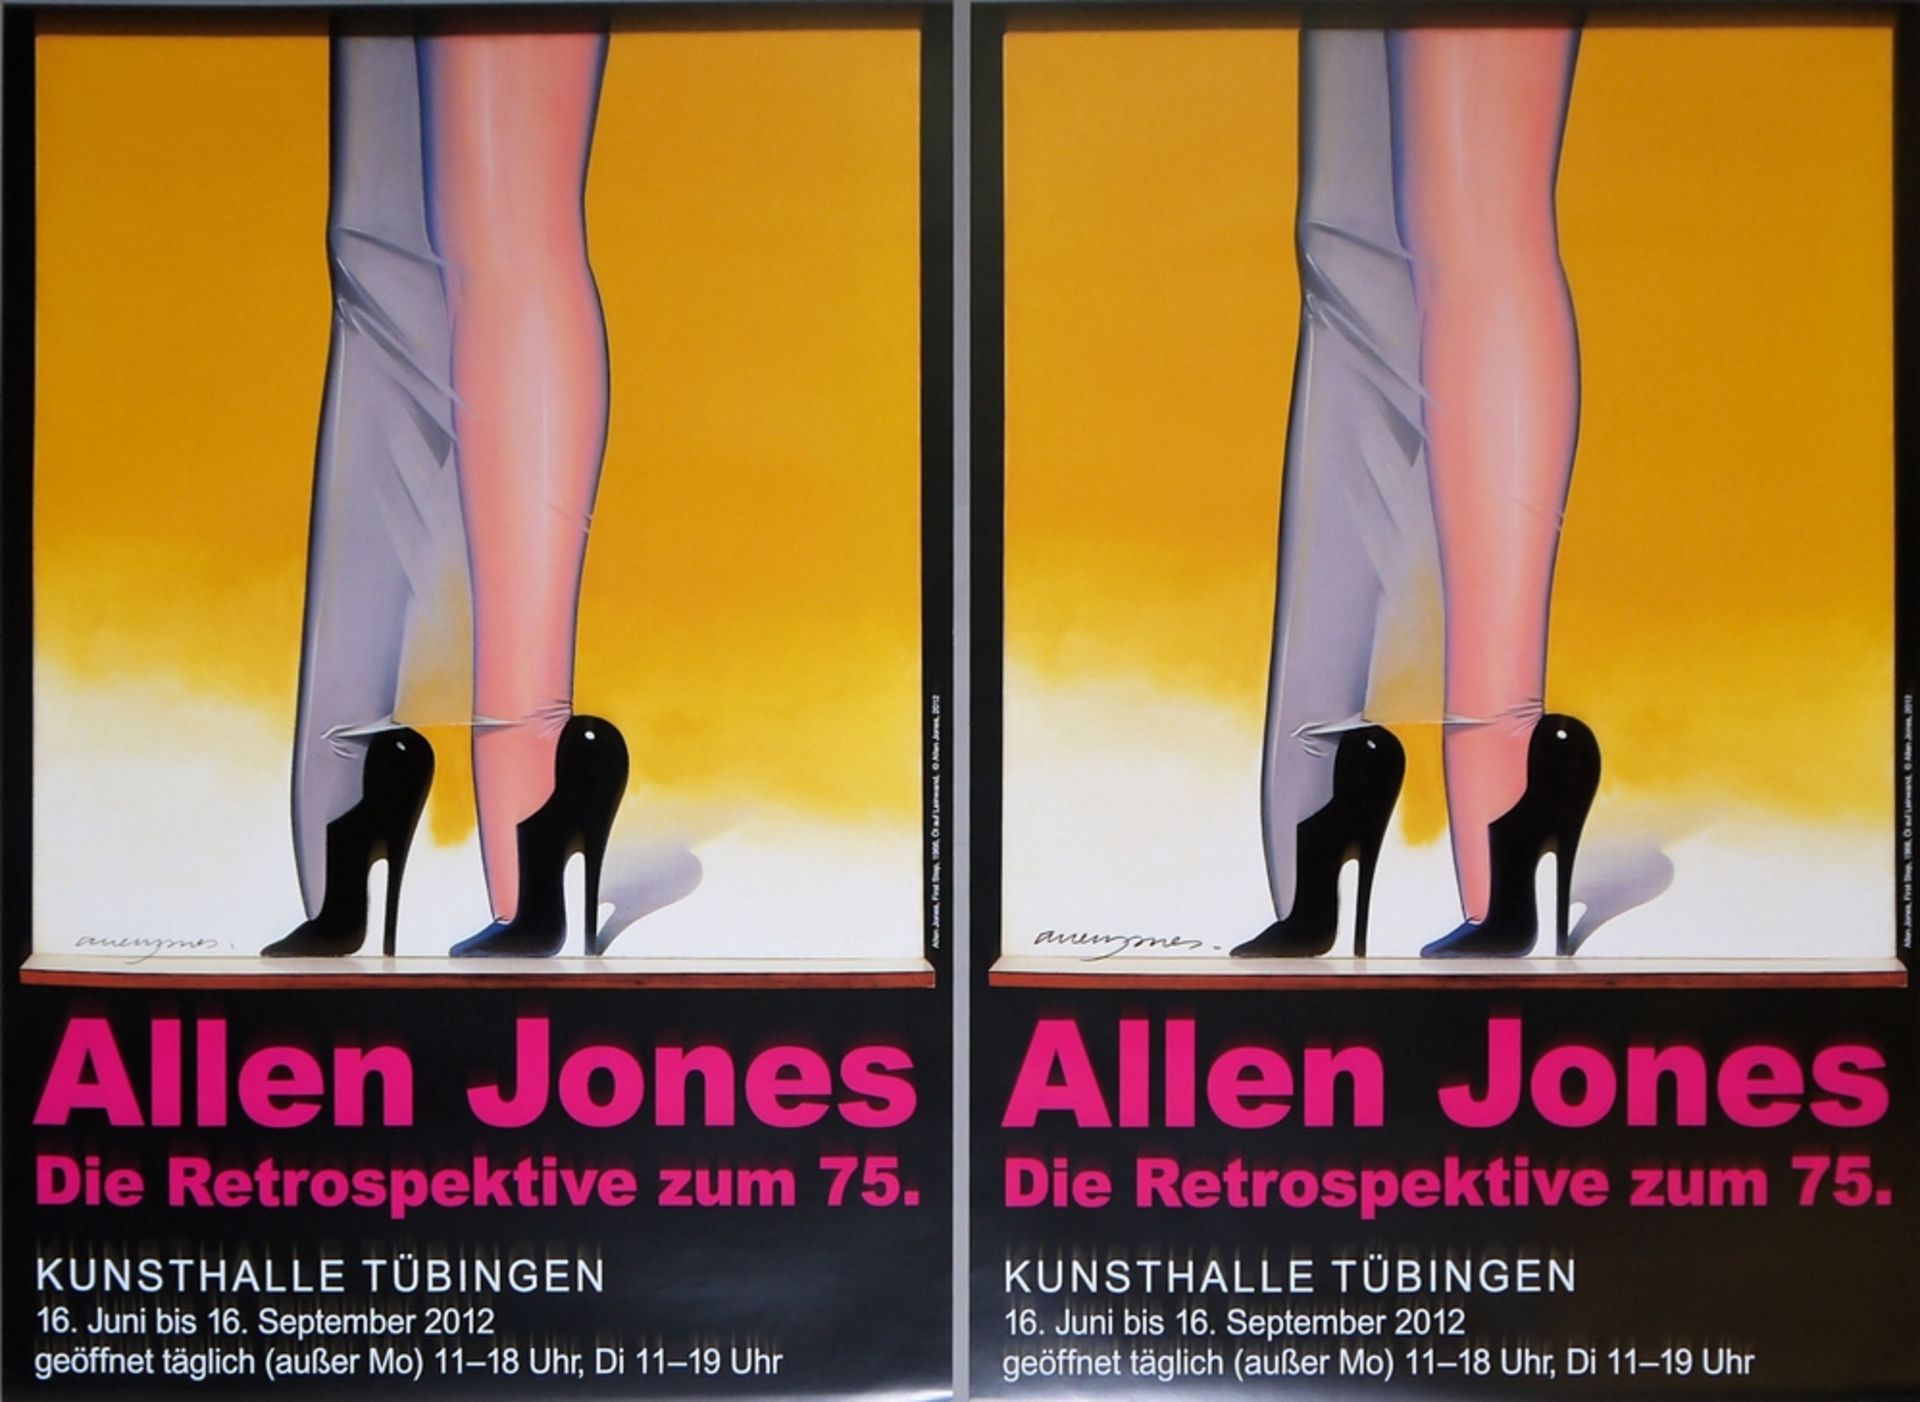 Allen Jones, Pop Art, bundle of 5 signed exhibition posters